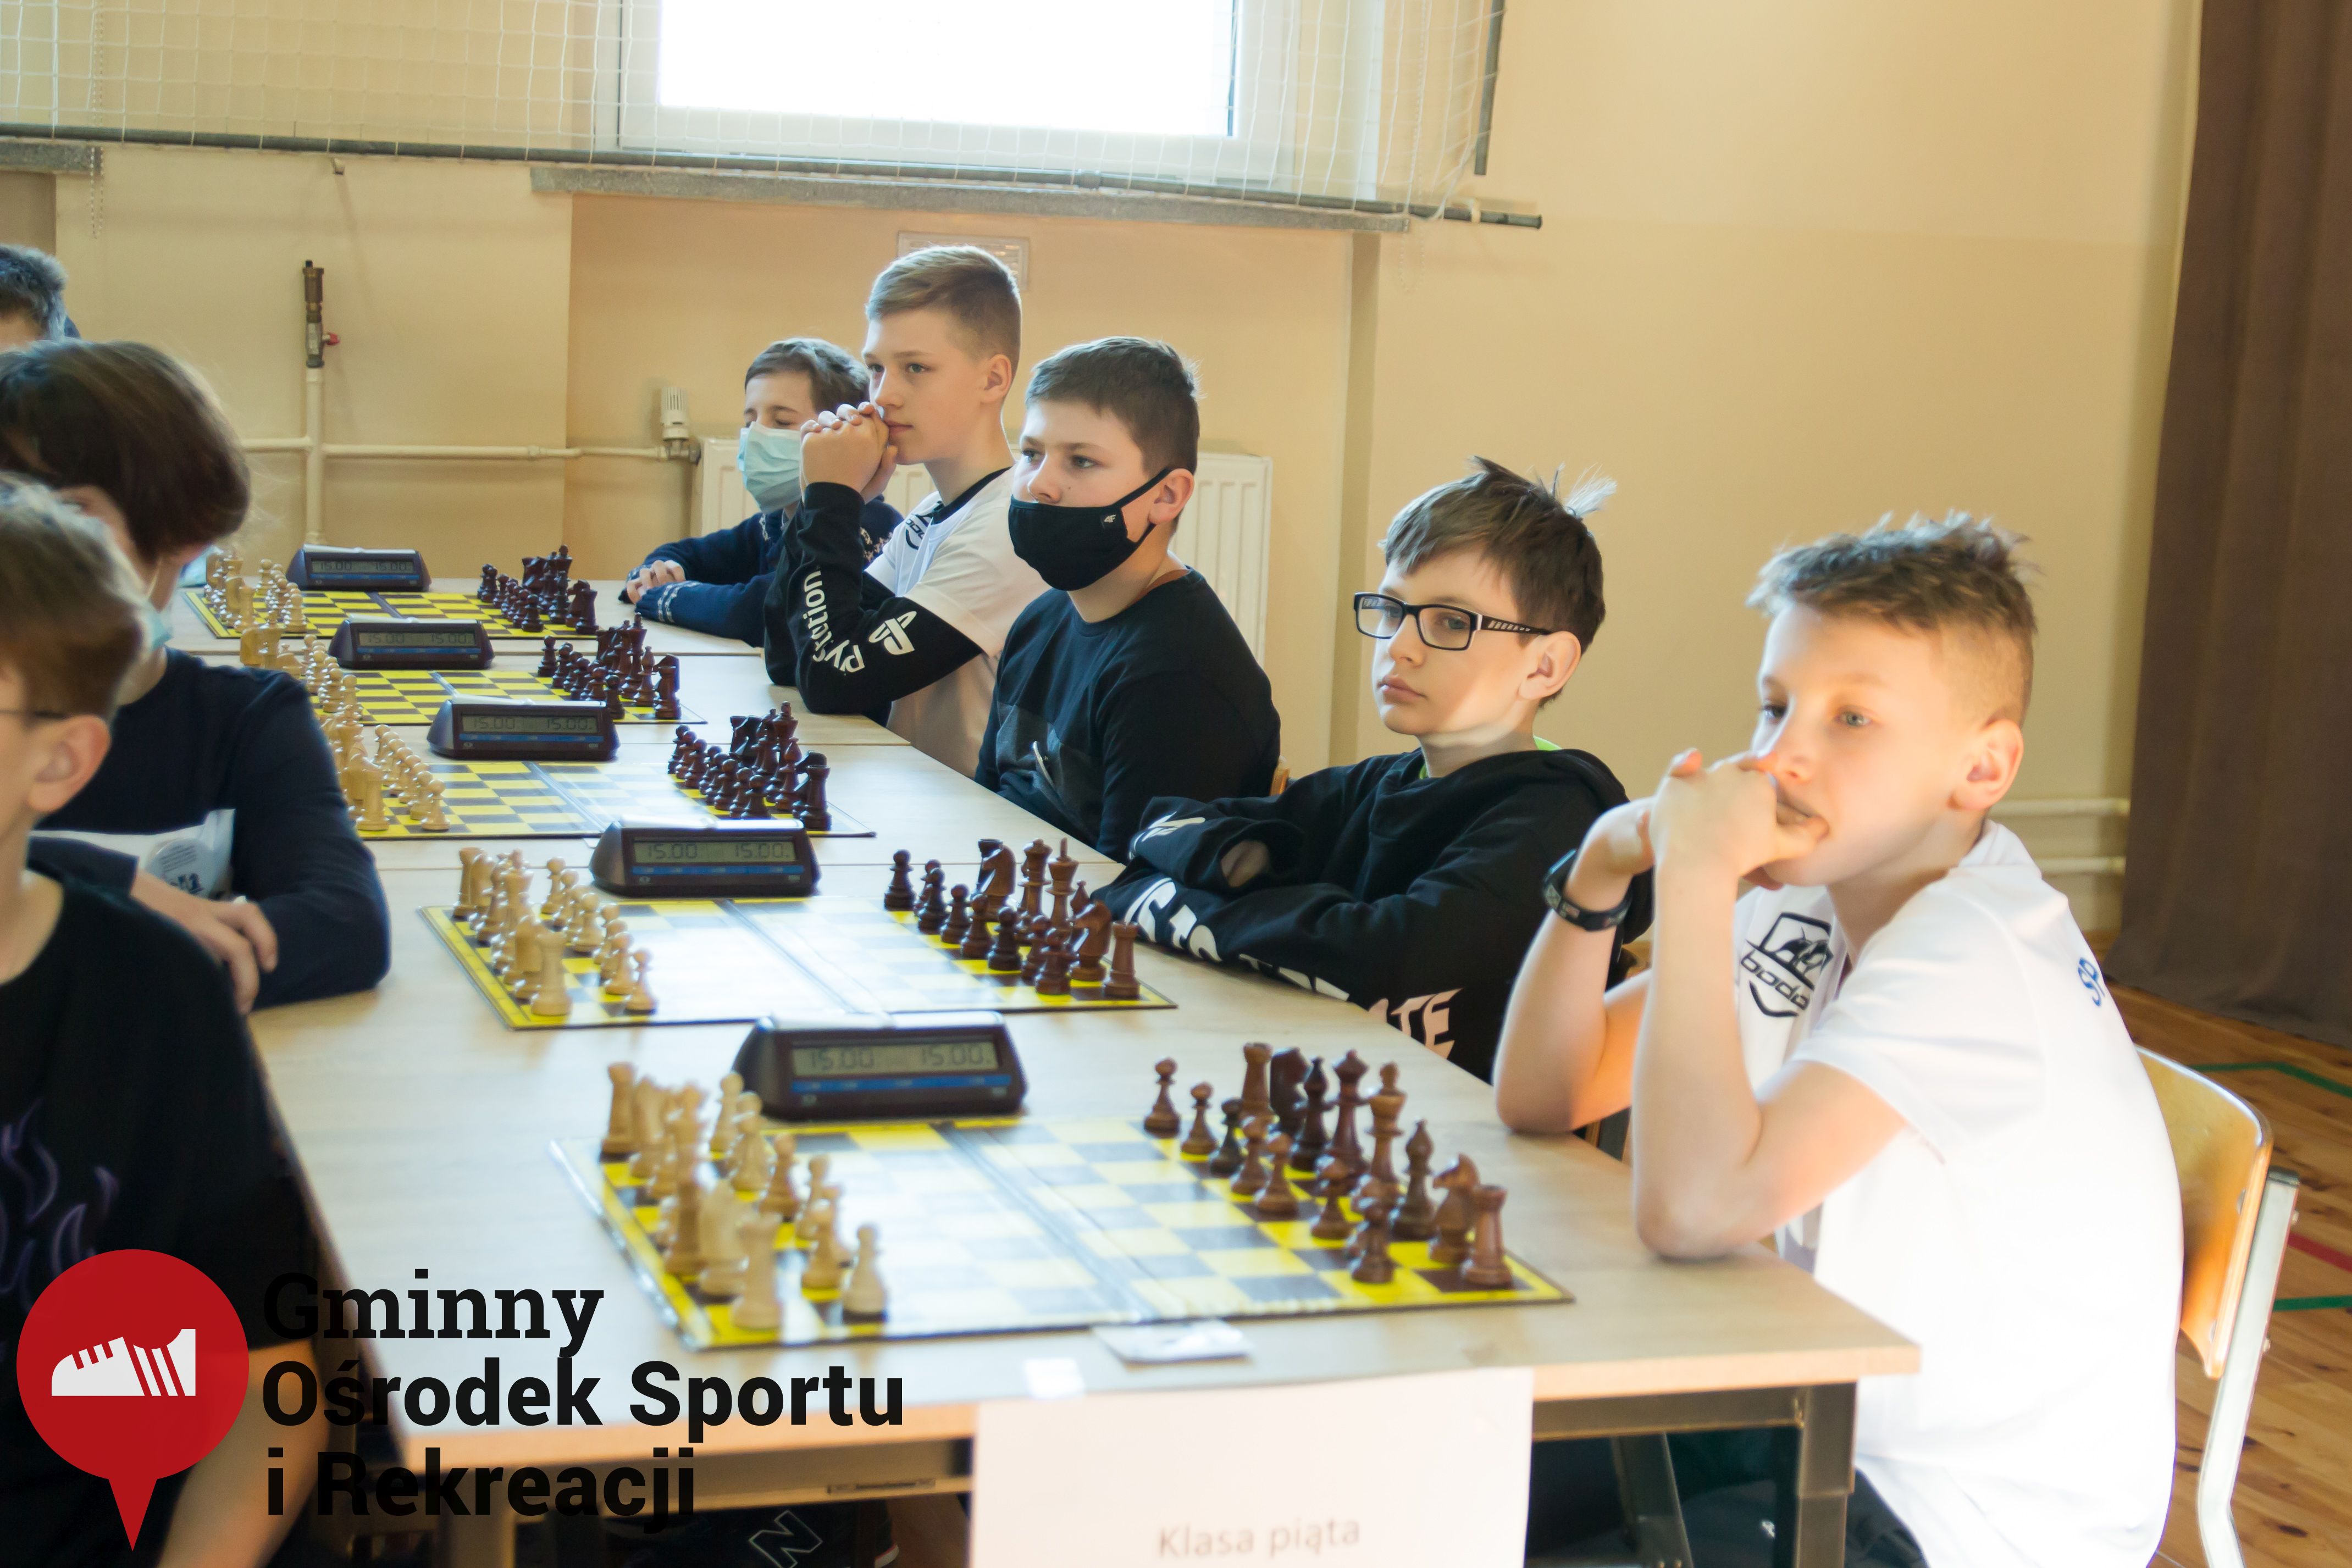 2022.03.12-13 Turniej szachowy - Edukacja przez Szachy016.jpg - 934,77 kB